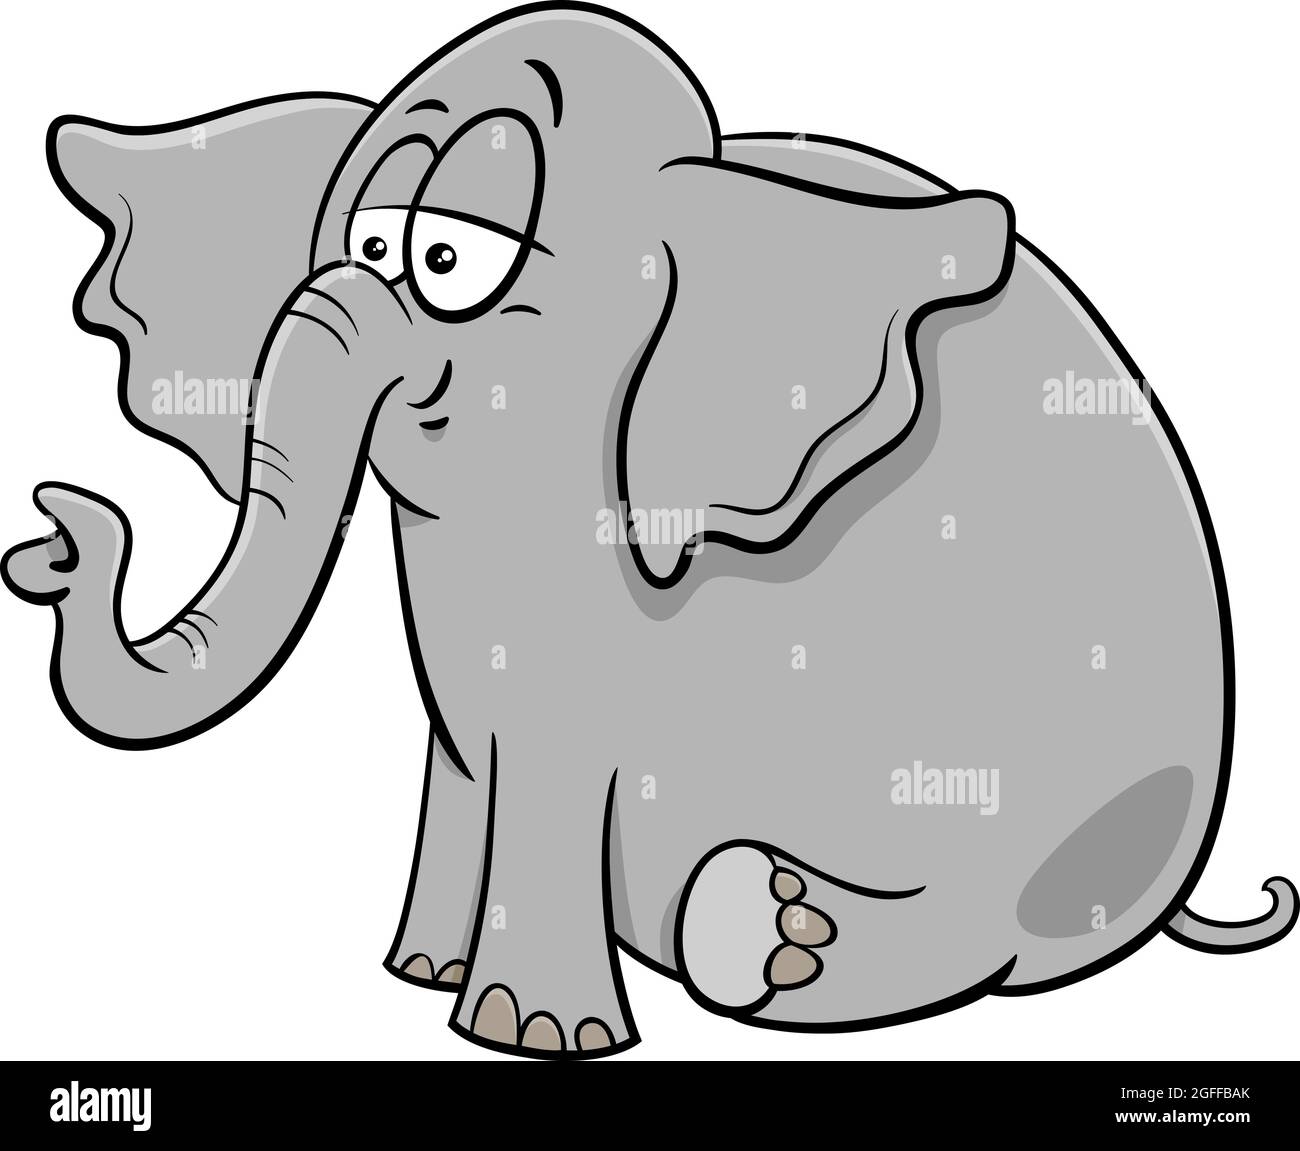 Illustrazione di cartoni animati di simpatico personaggio animale fumetto elefante Illustrazione Vettoriale